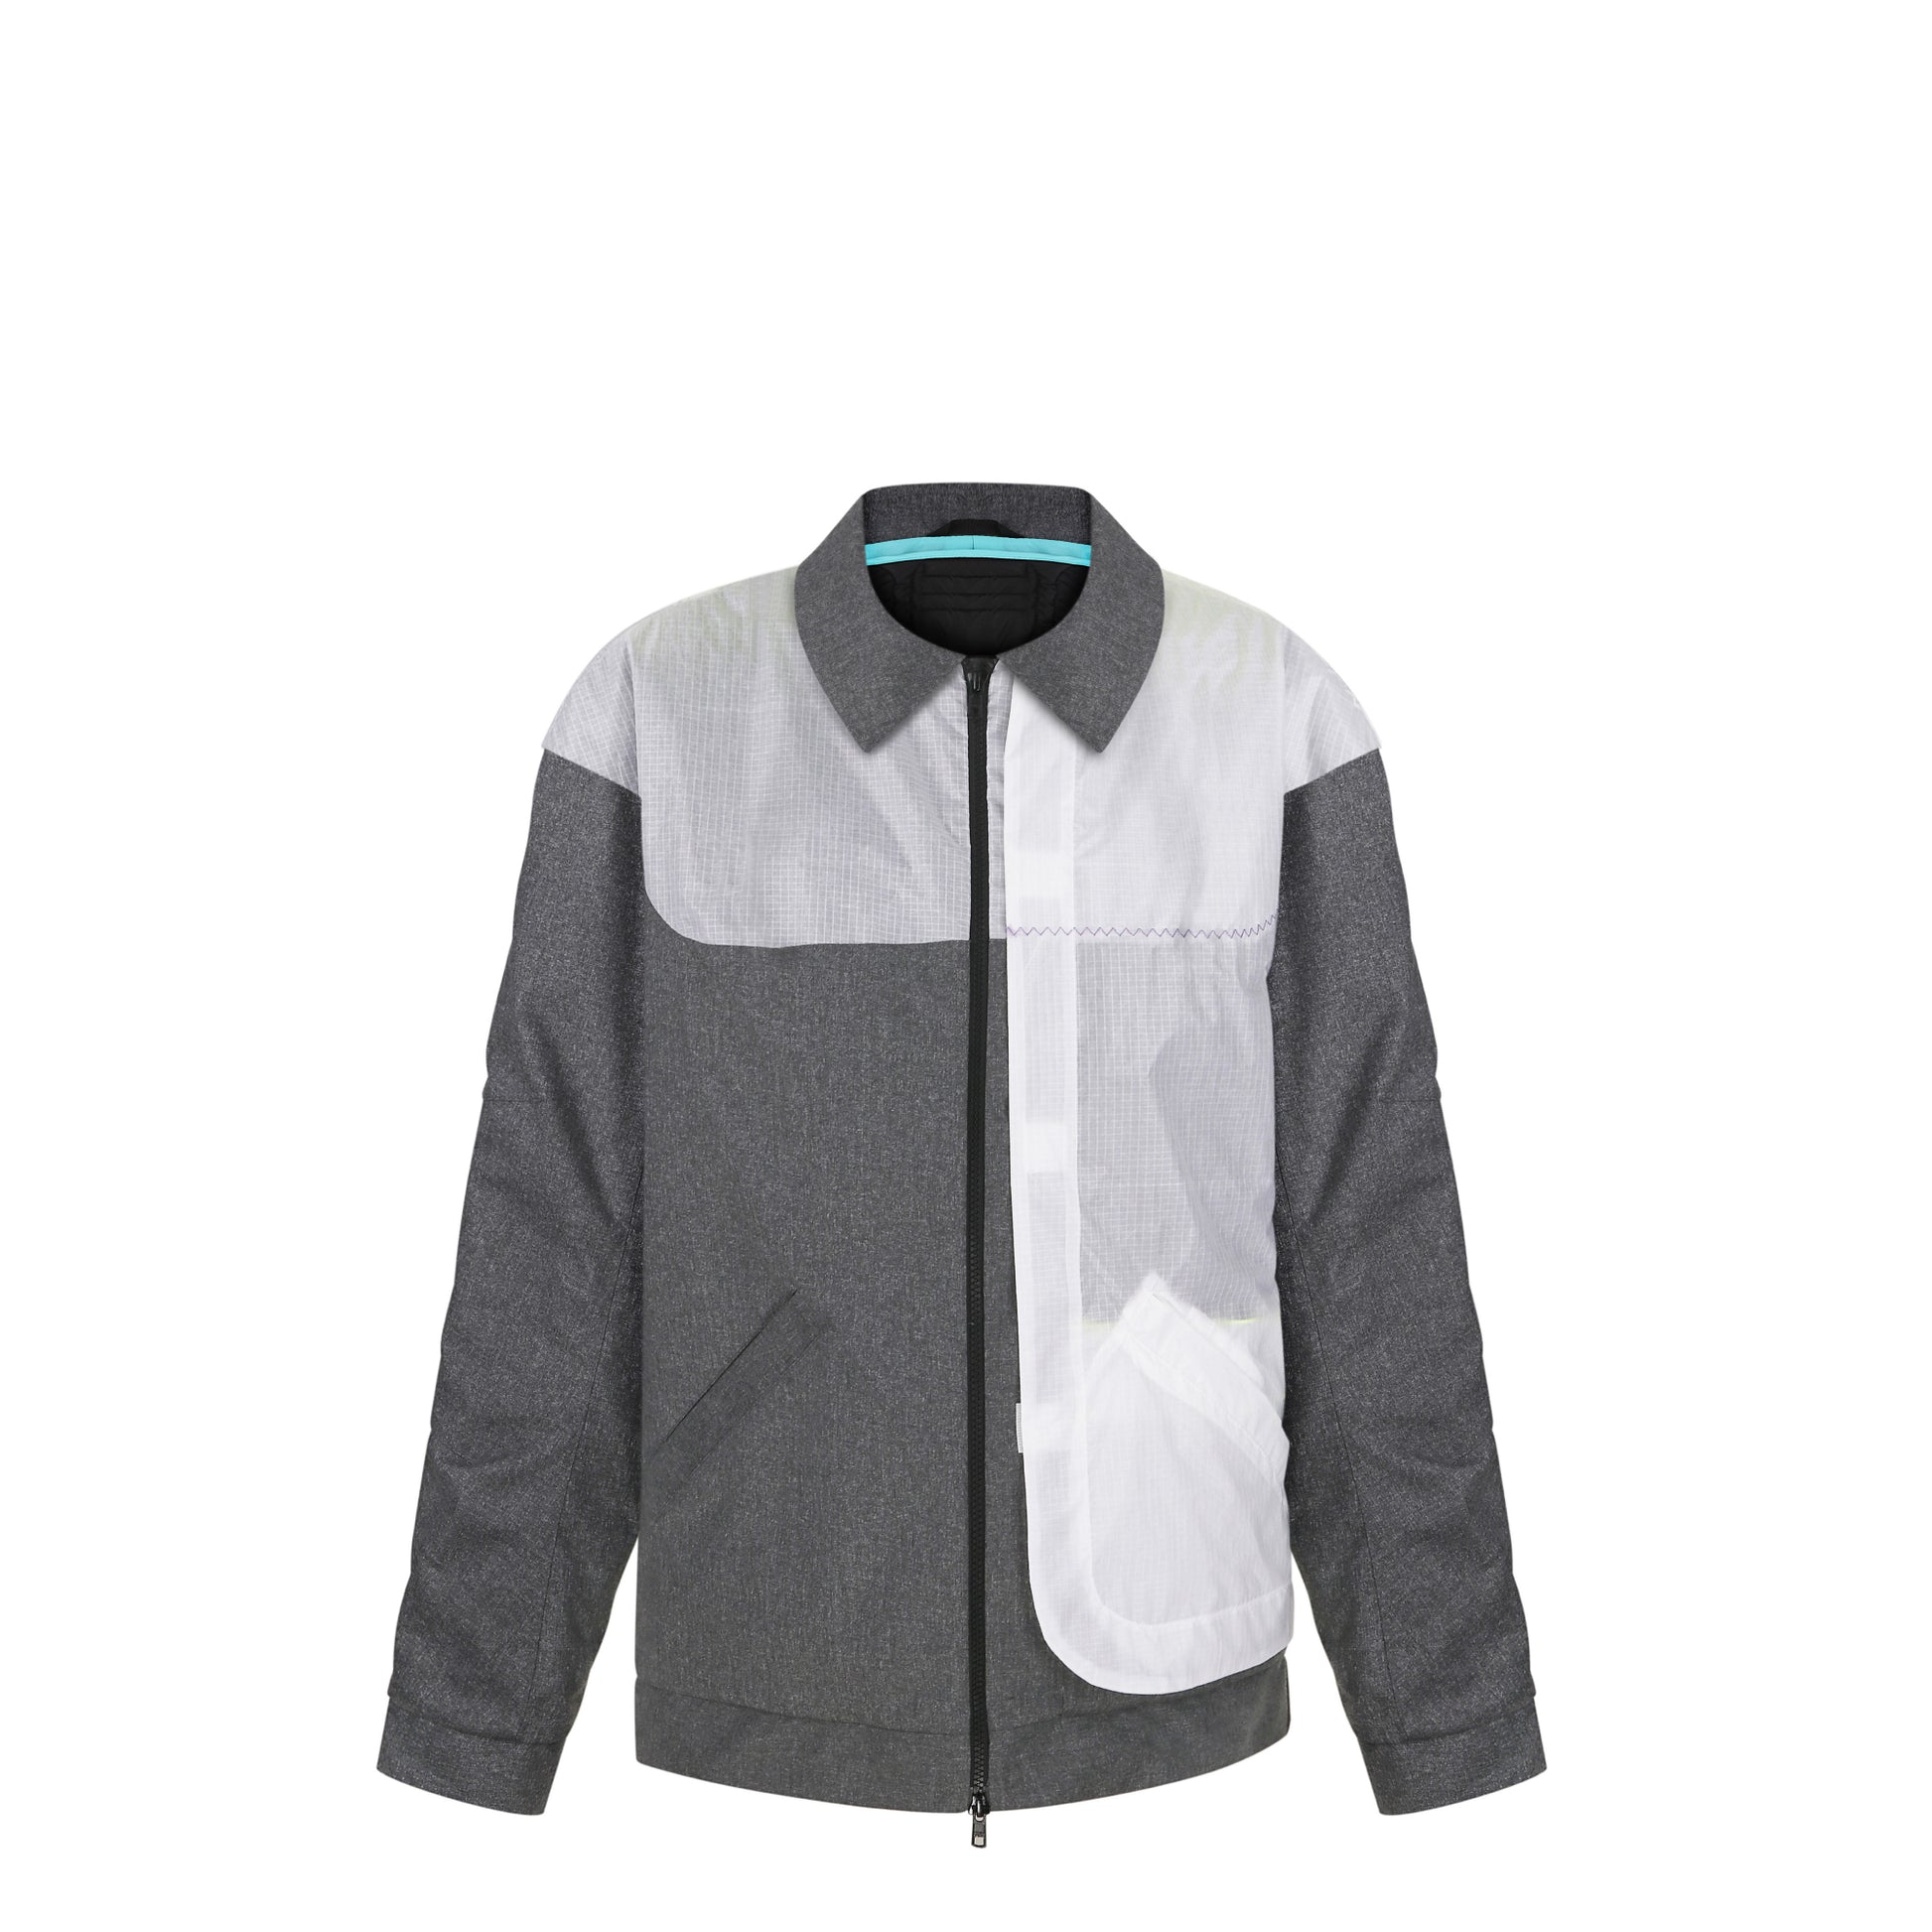 Black windbreaker/windcheater jacket